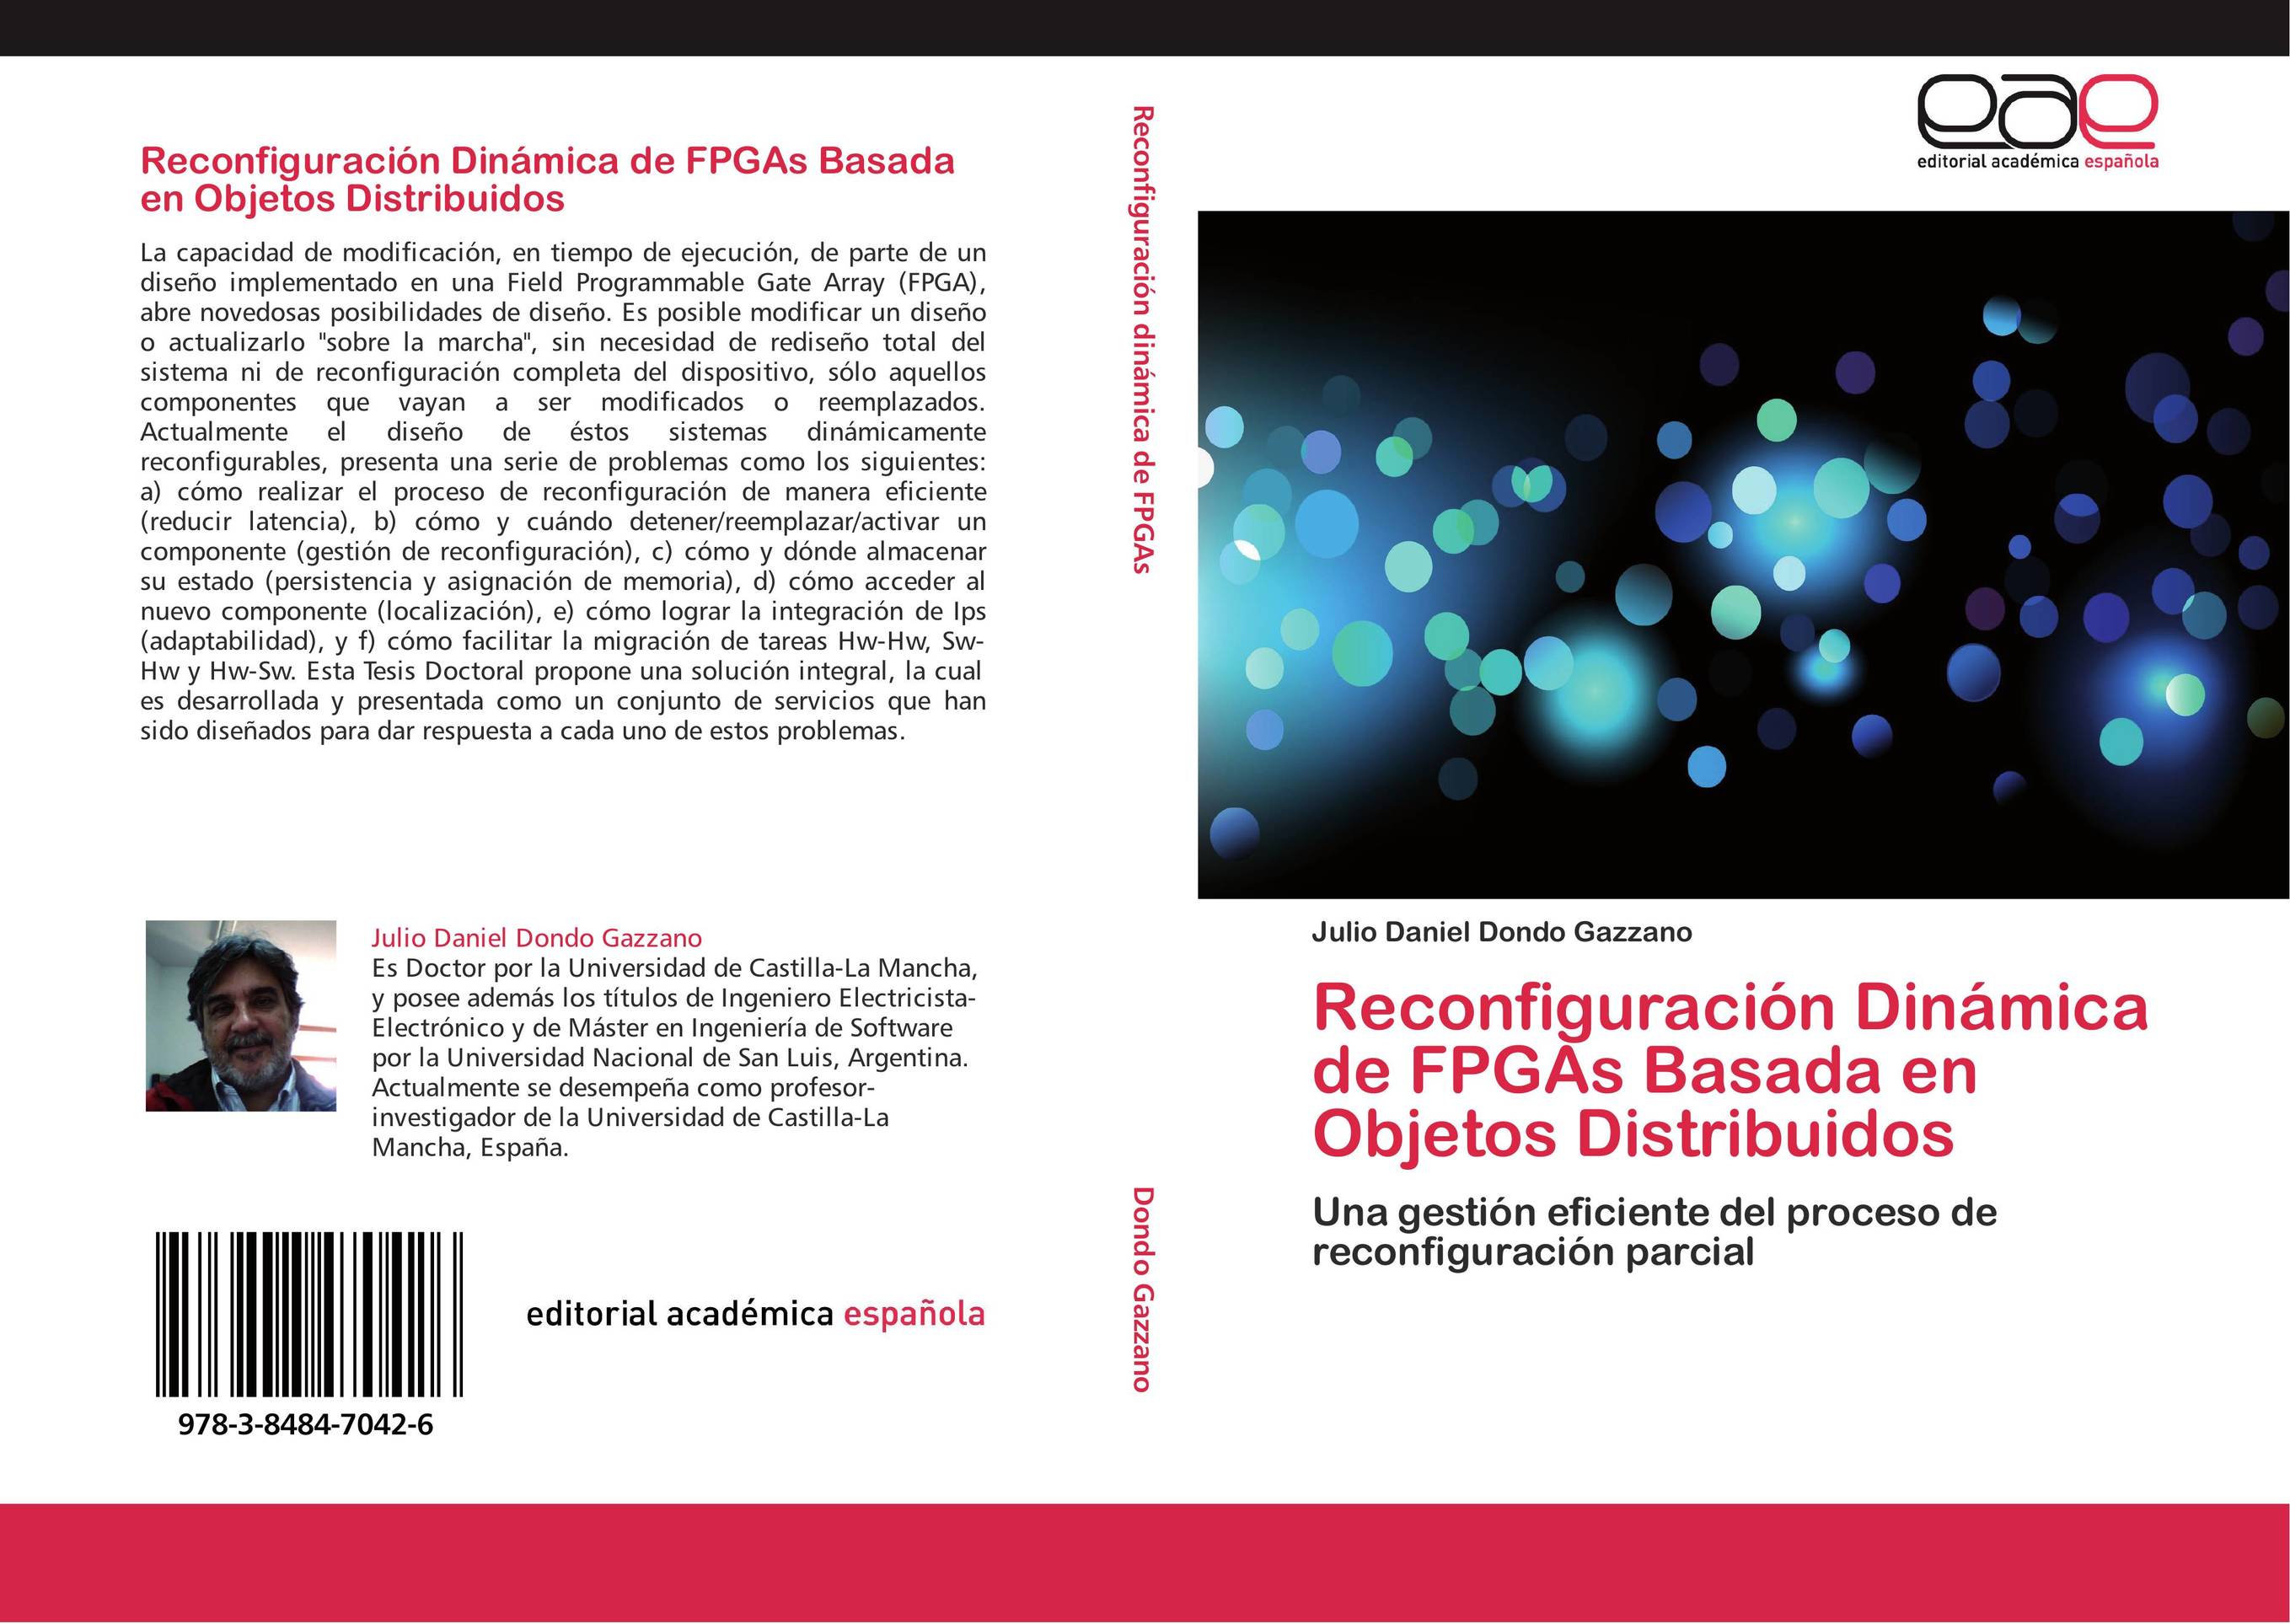 Reconfiguración Dinámica de FPGAs Basada en Objetos Distribuidos